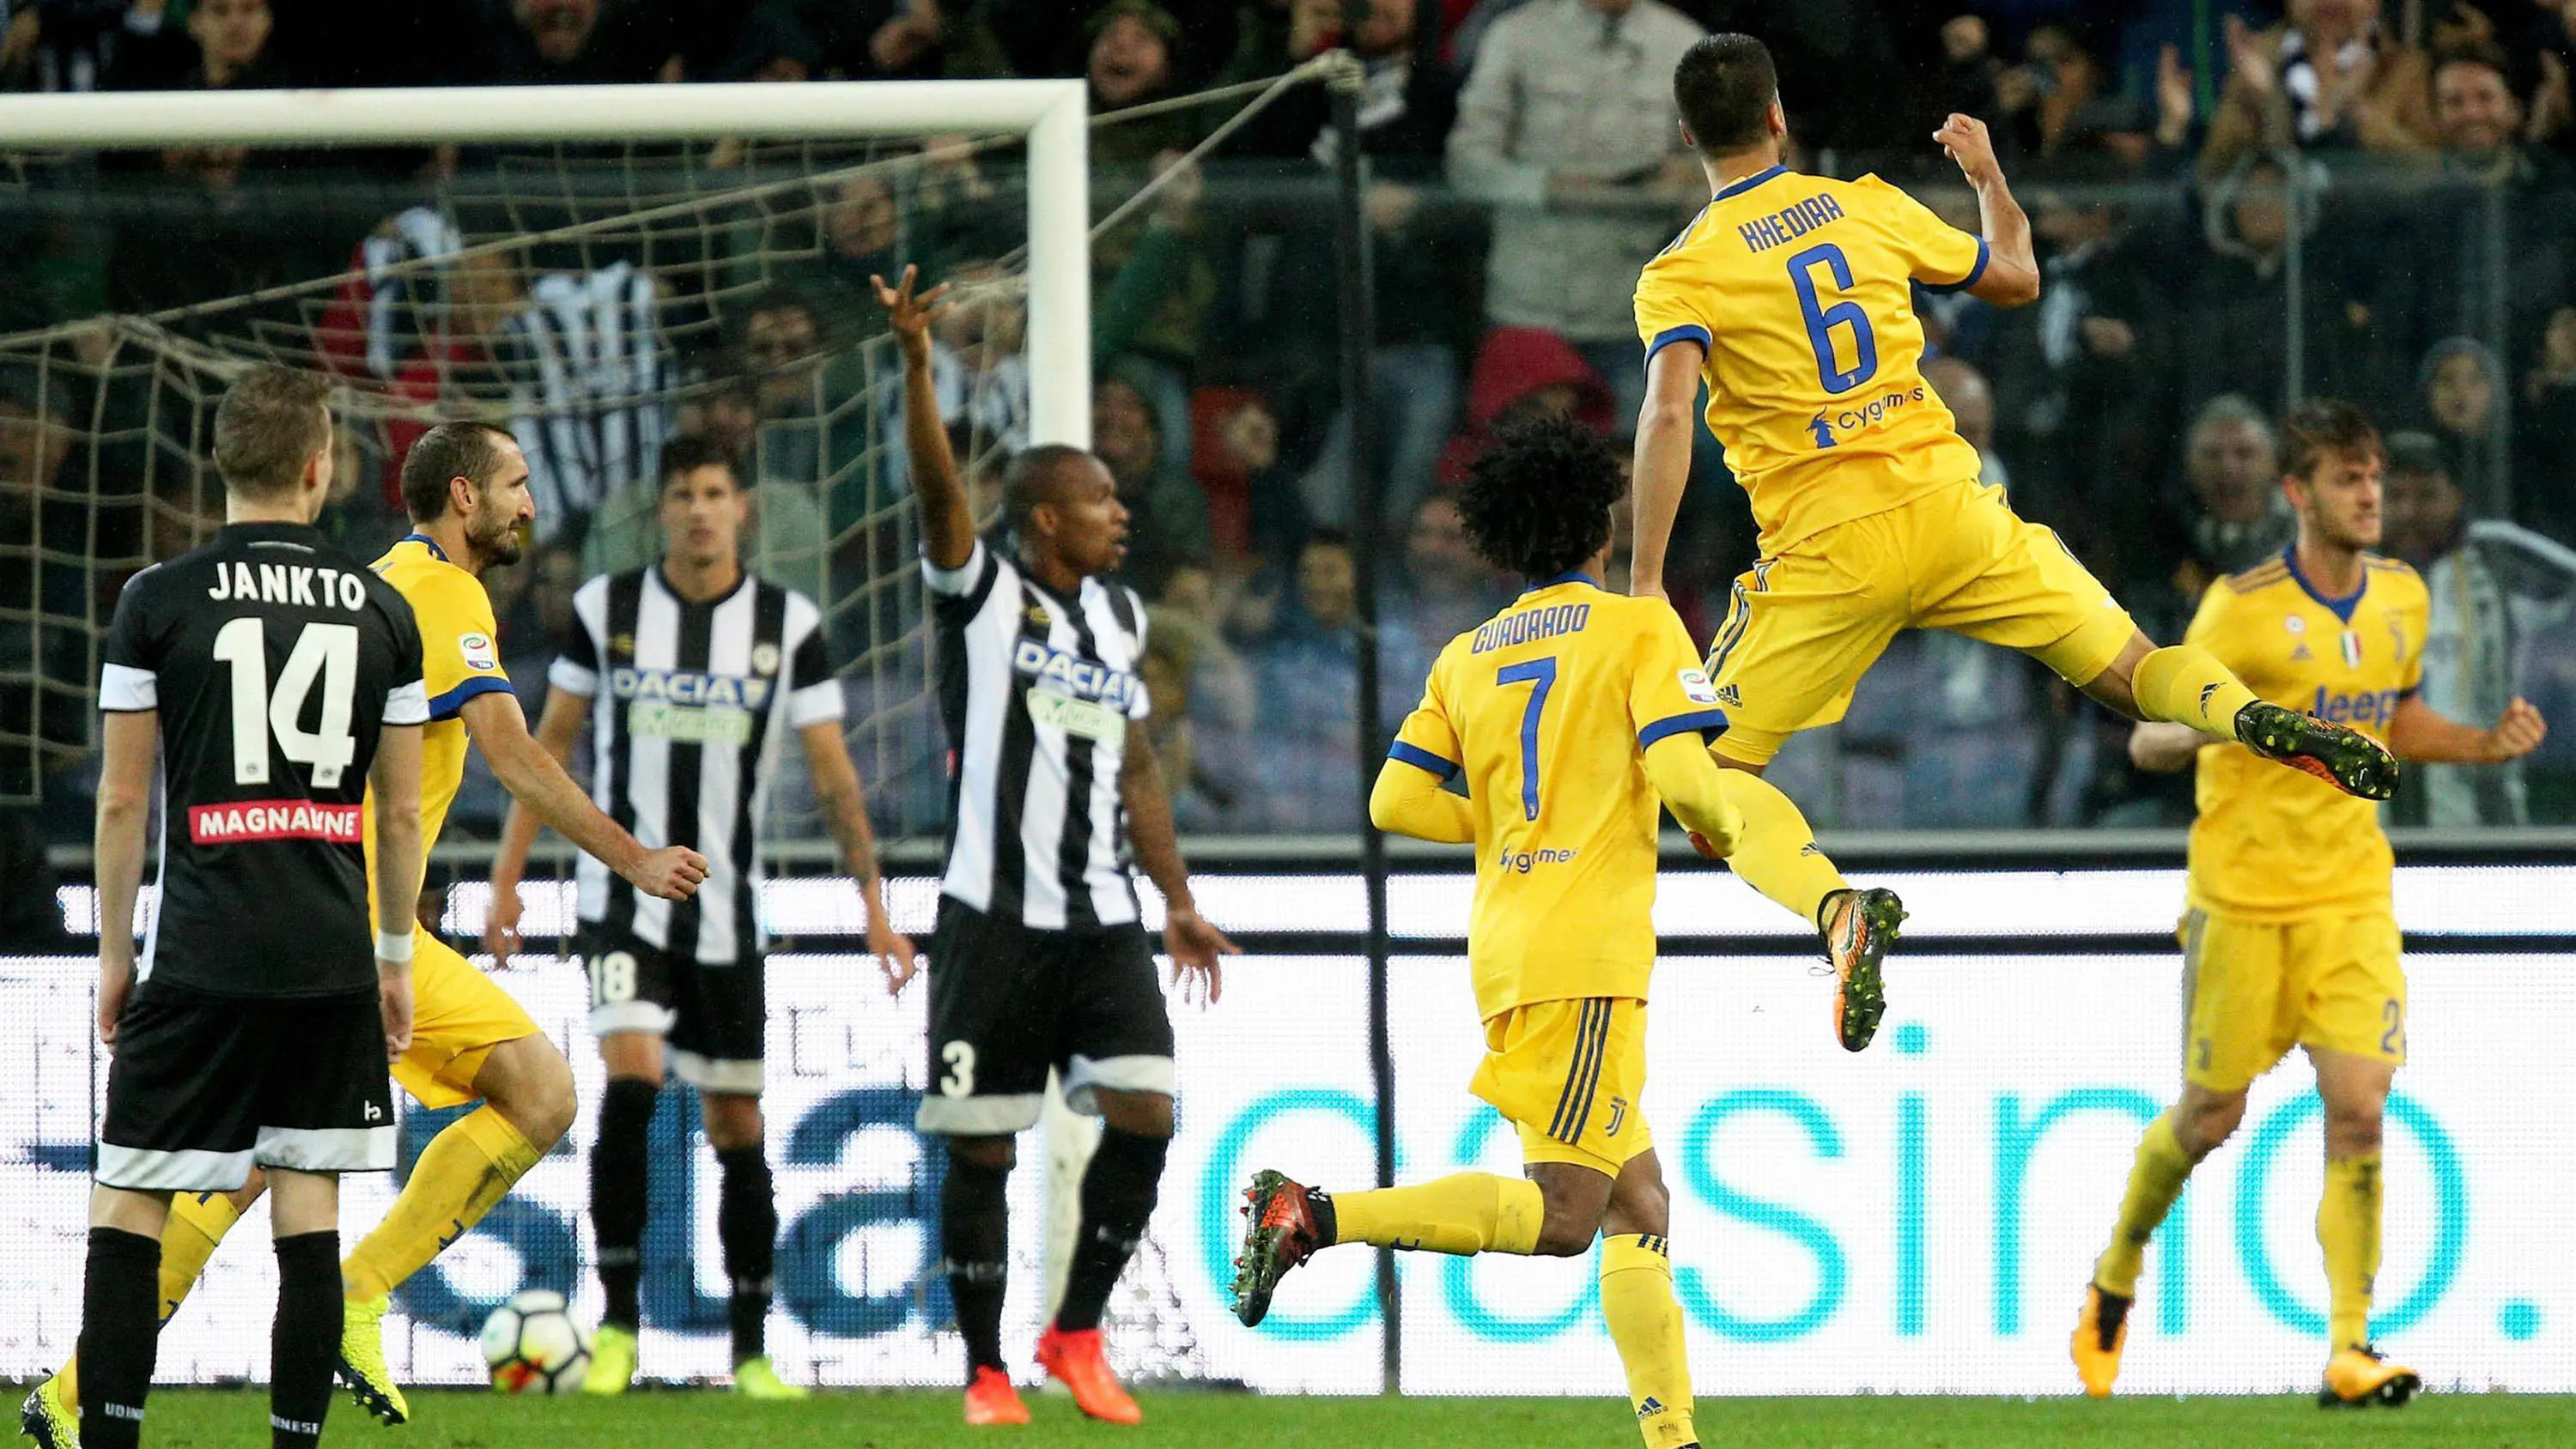 Gelandang Juventus, Sami Khedira, merayakan gol yang dicetaknya ke gawang Udinese pada laga Serie A Italia di Stadion Friuli, Udine, Minggu (22/10/2017). (AP/Alberto Lancia)